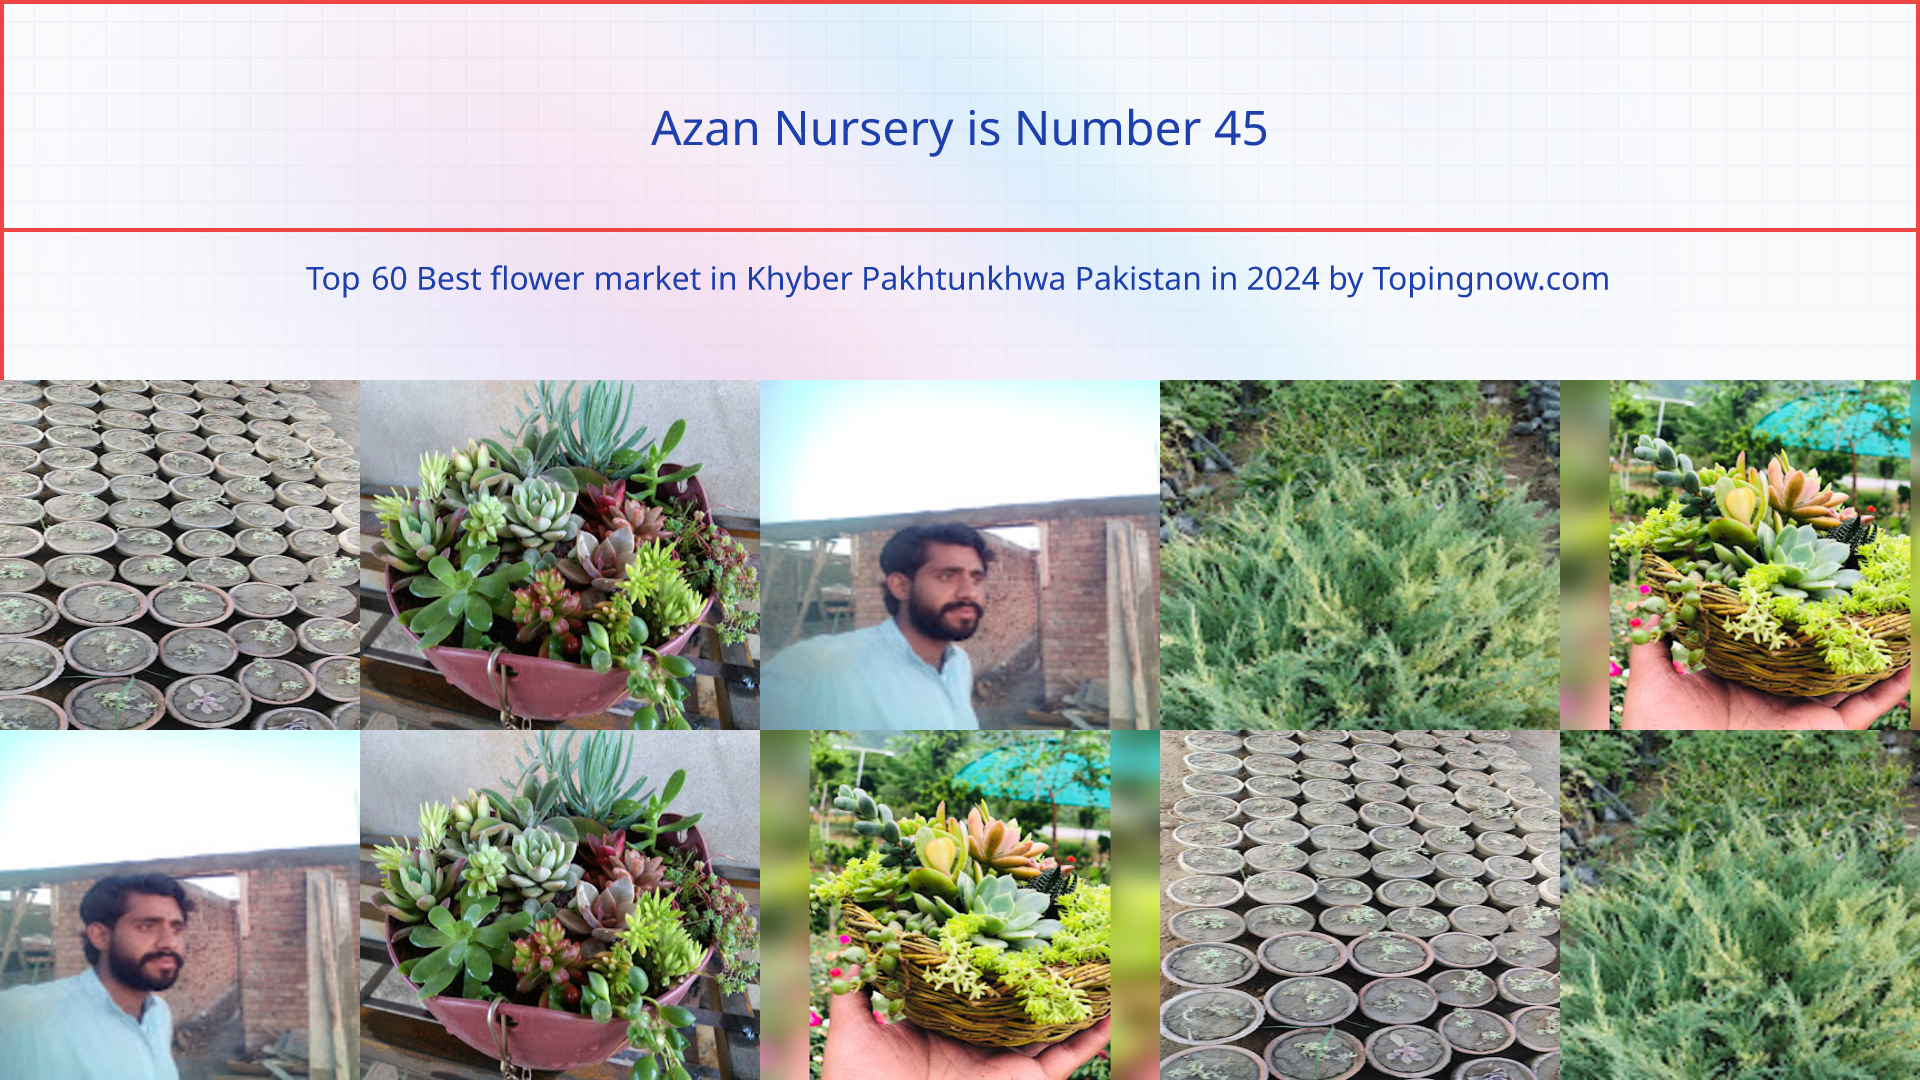 Azan Nursery: Top 60 Best flower market in Khyber Pakhtunkhwa Pakistan in 2024